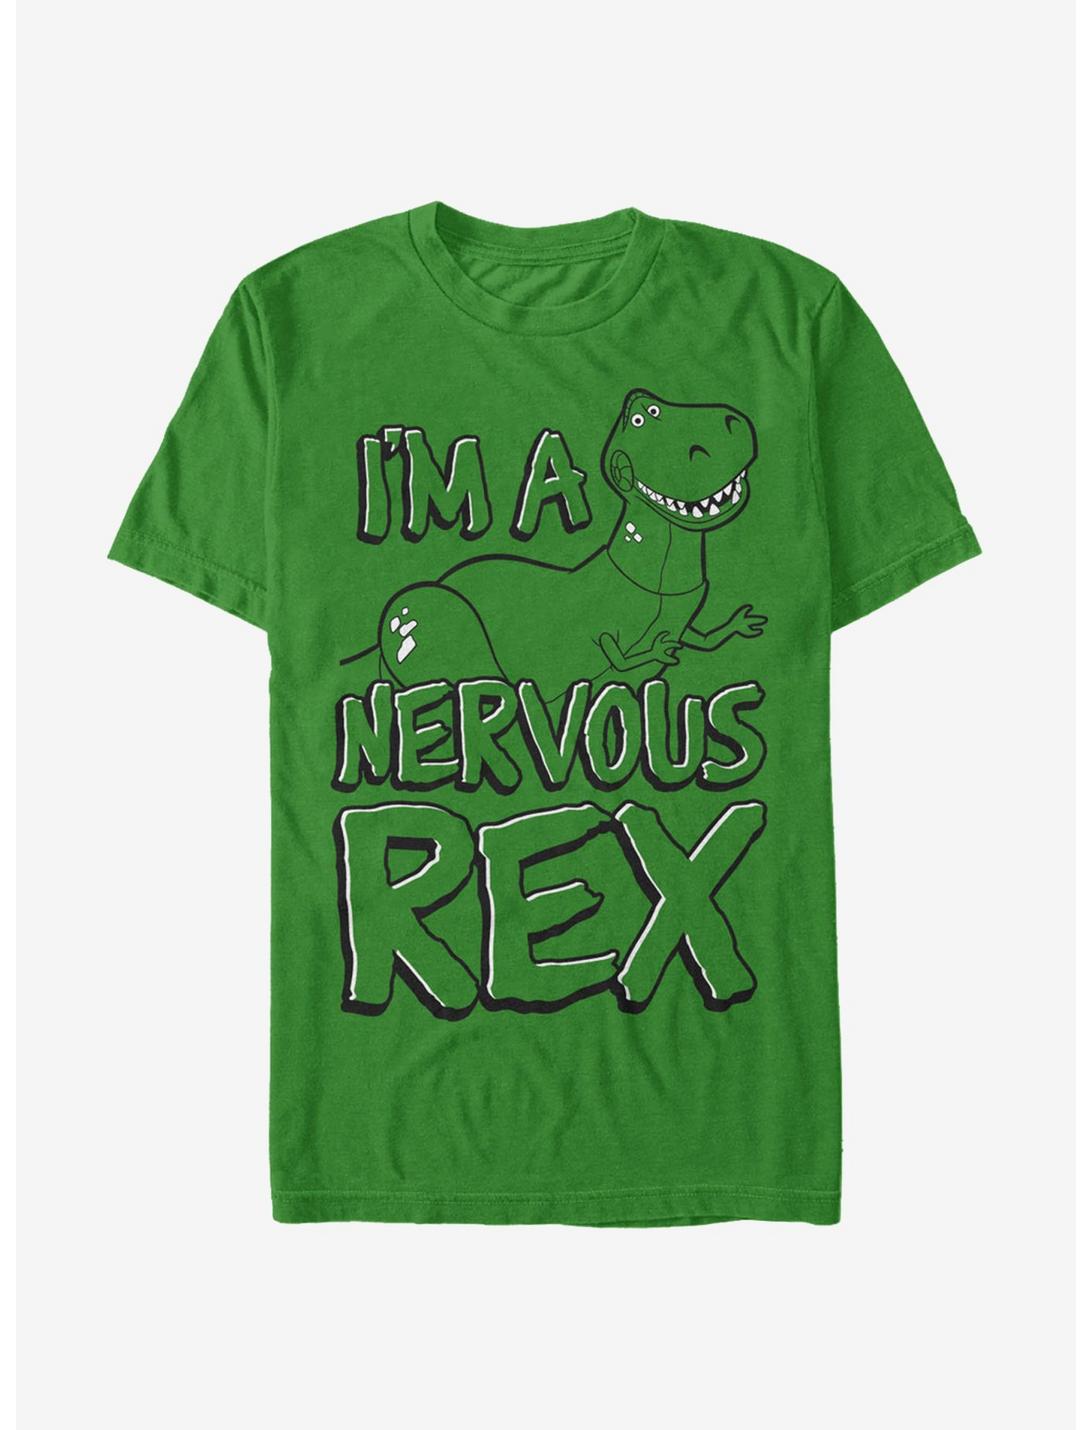 Toy Story Nervous Rex T-Shirt, KELLY, hi-res